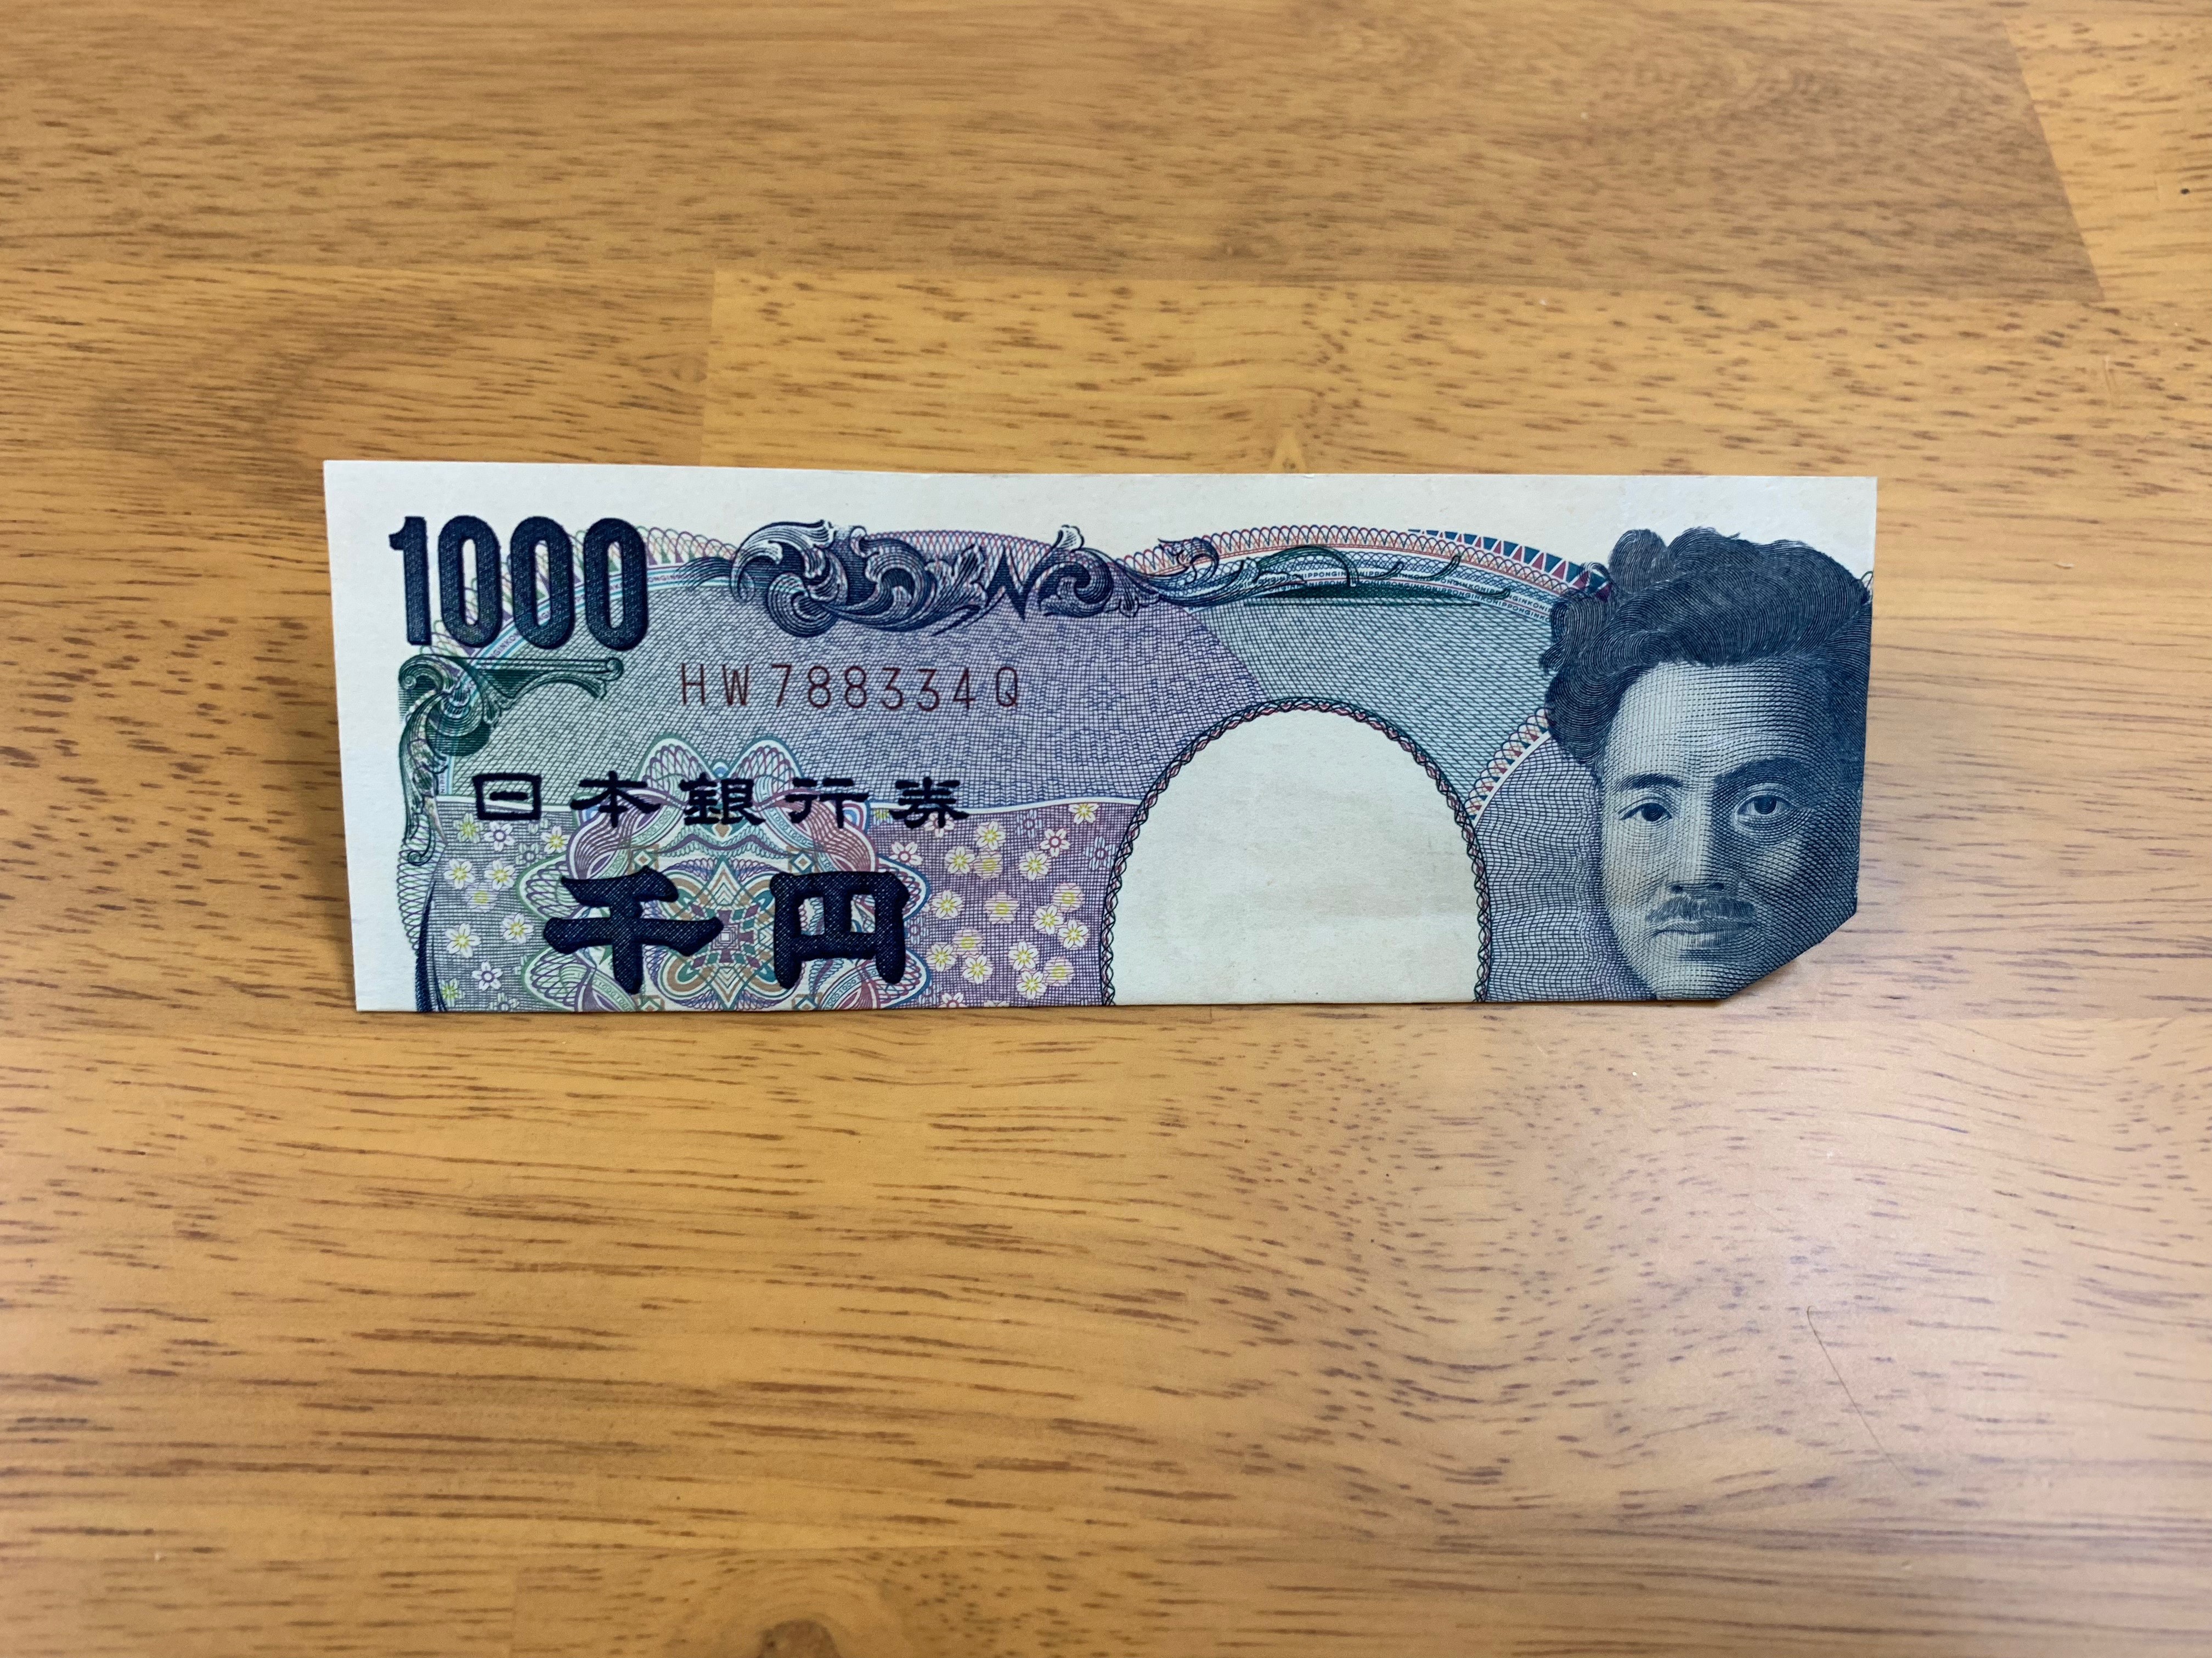 ターバン野口 お札 千円札のおもしろい折り方の画像4